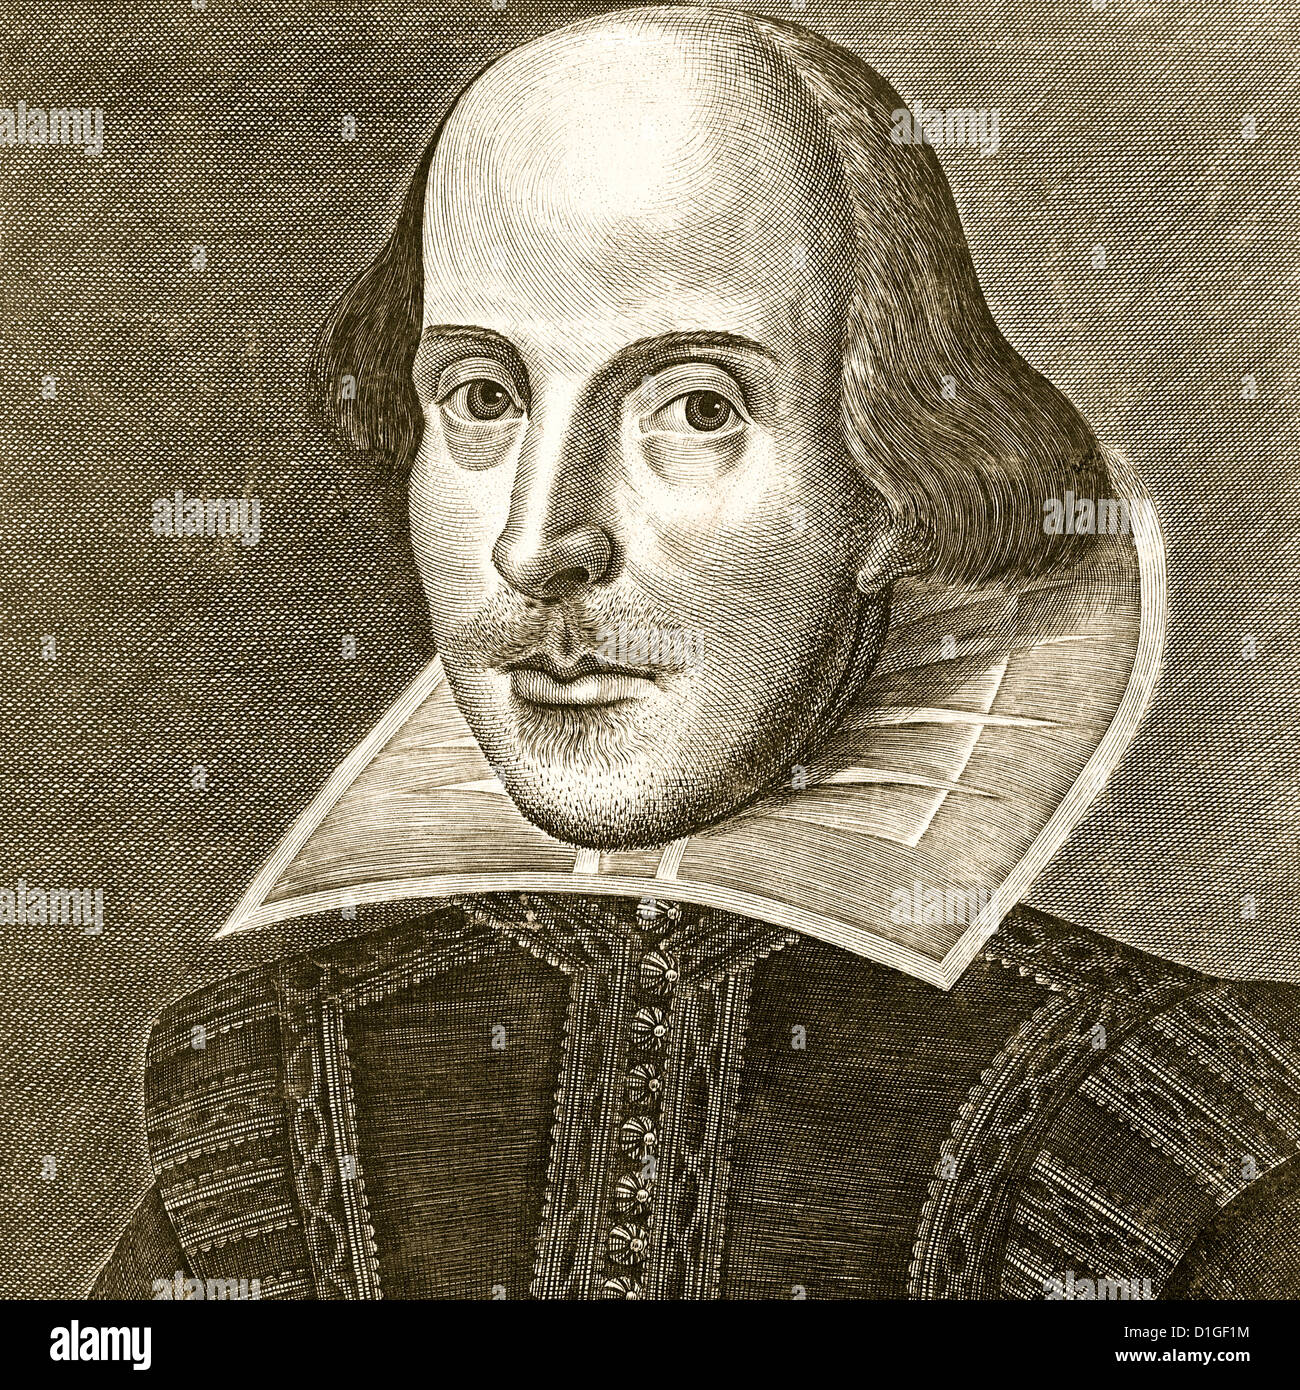 Shakespeare. William Shakespeare ritratto incisione di Martin Droeshout come frontespizio del primo Folio di raccolte di opere in 1623 Foto Stock